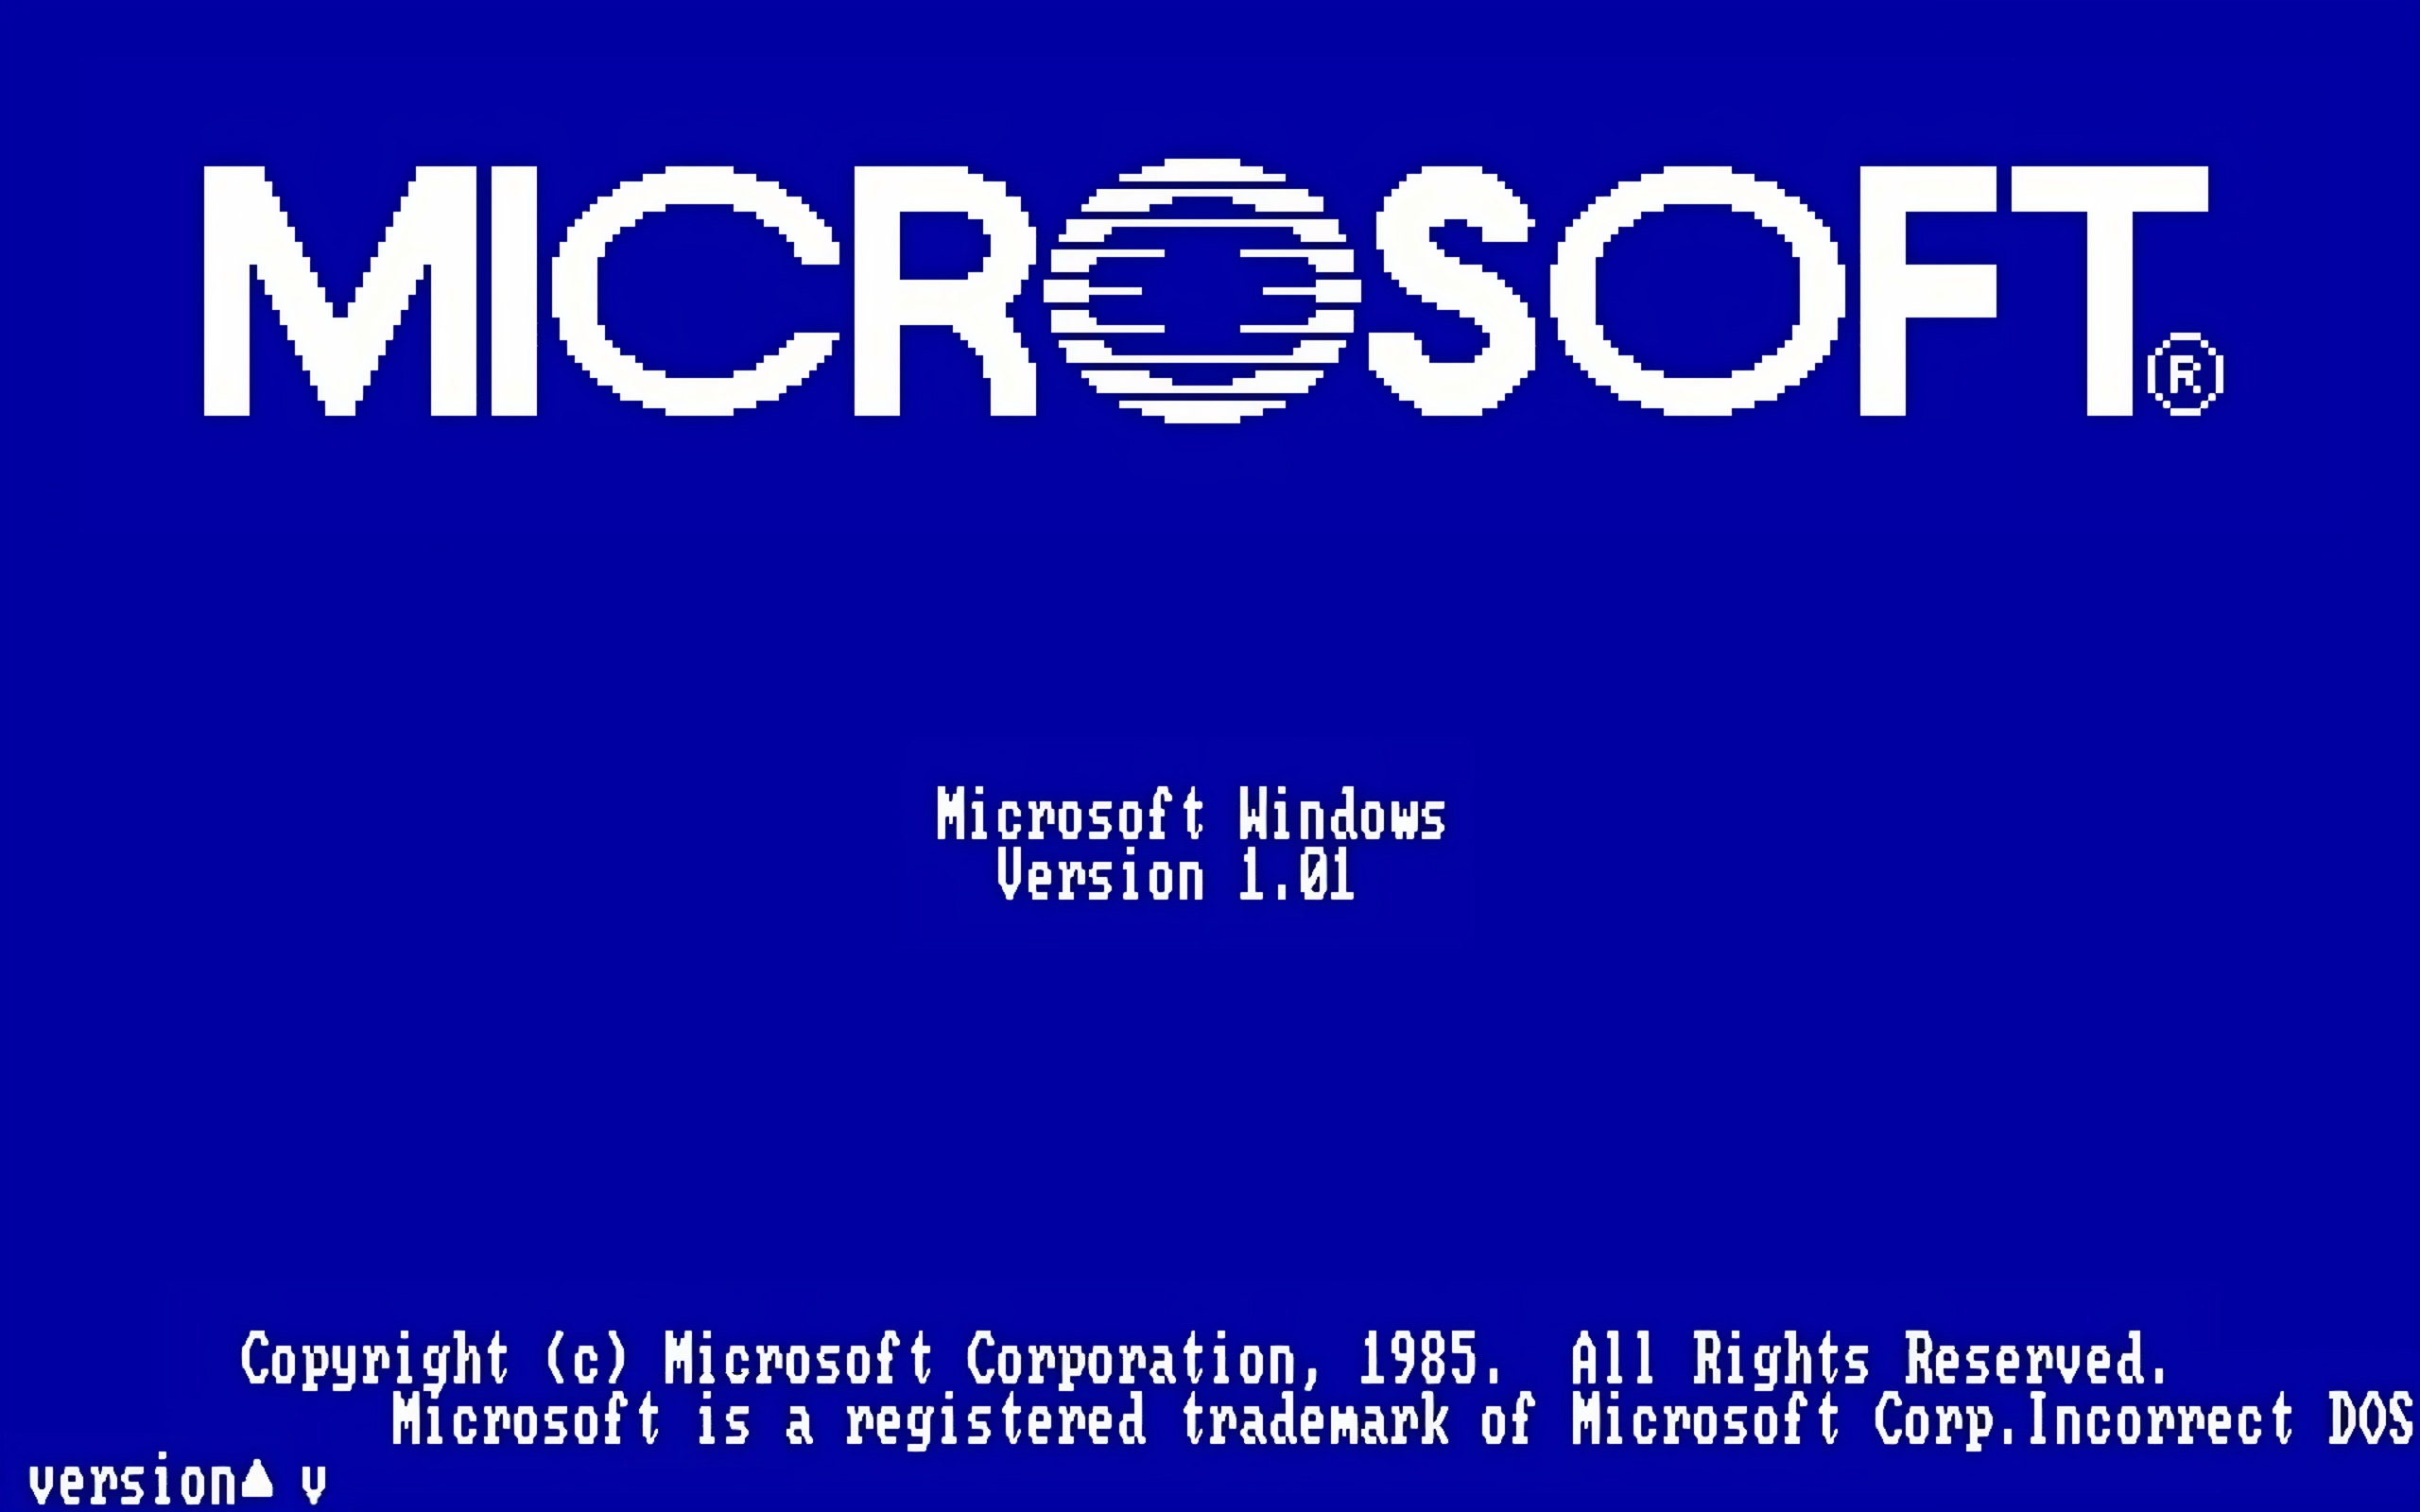 Il y a 40 ans, Microsoft annonçait la sortie de Windows...